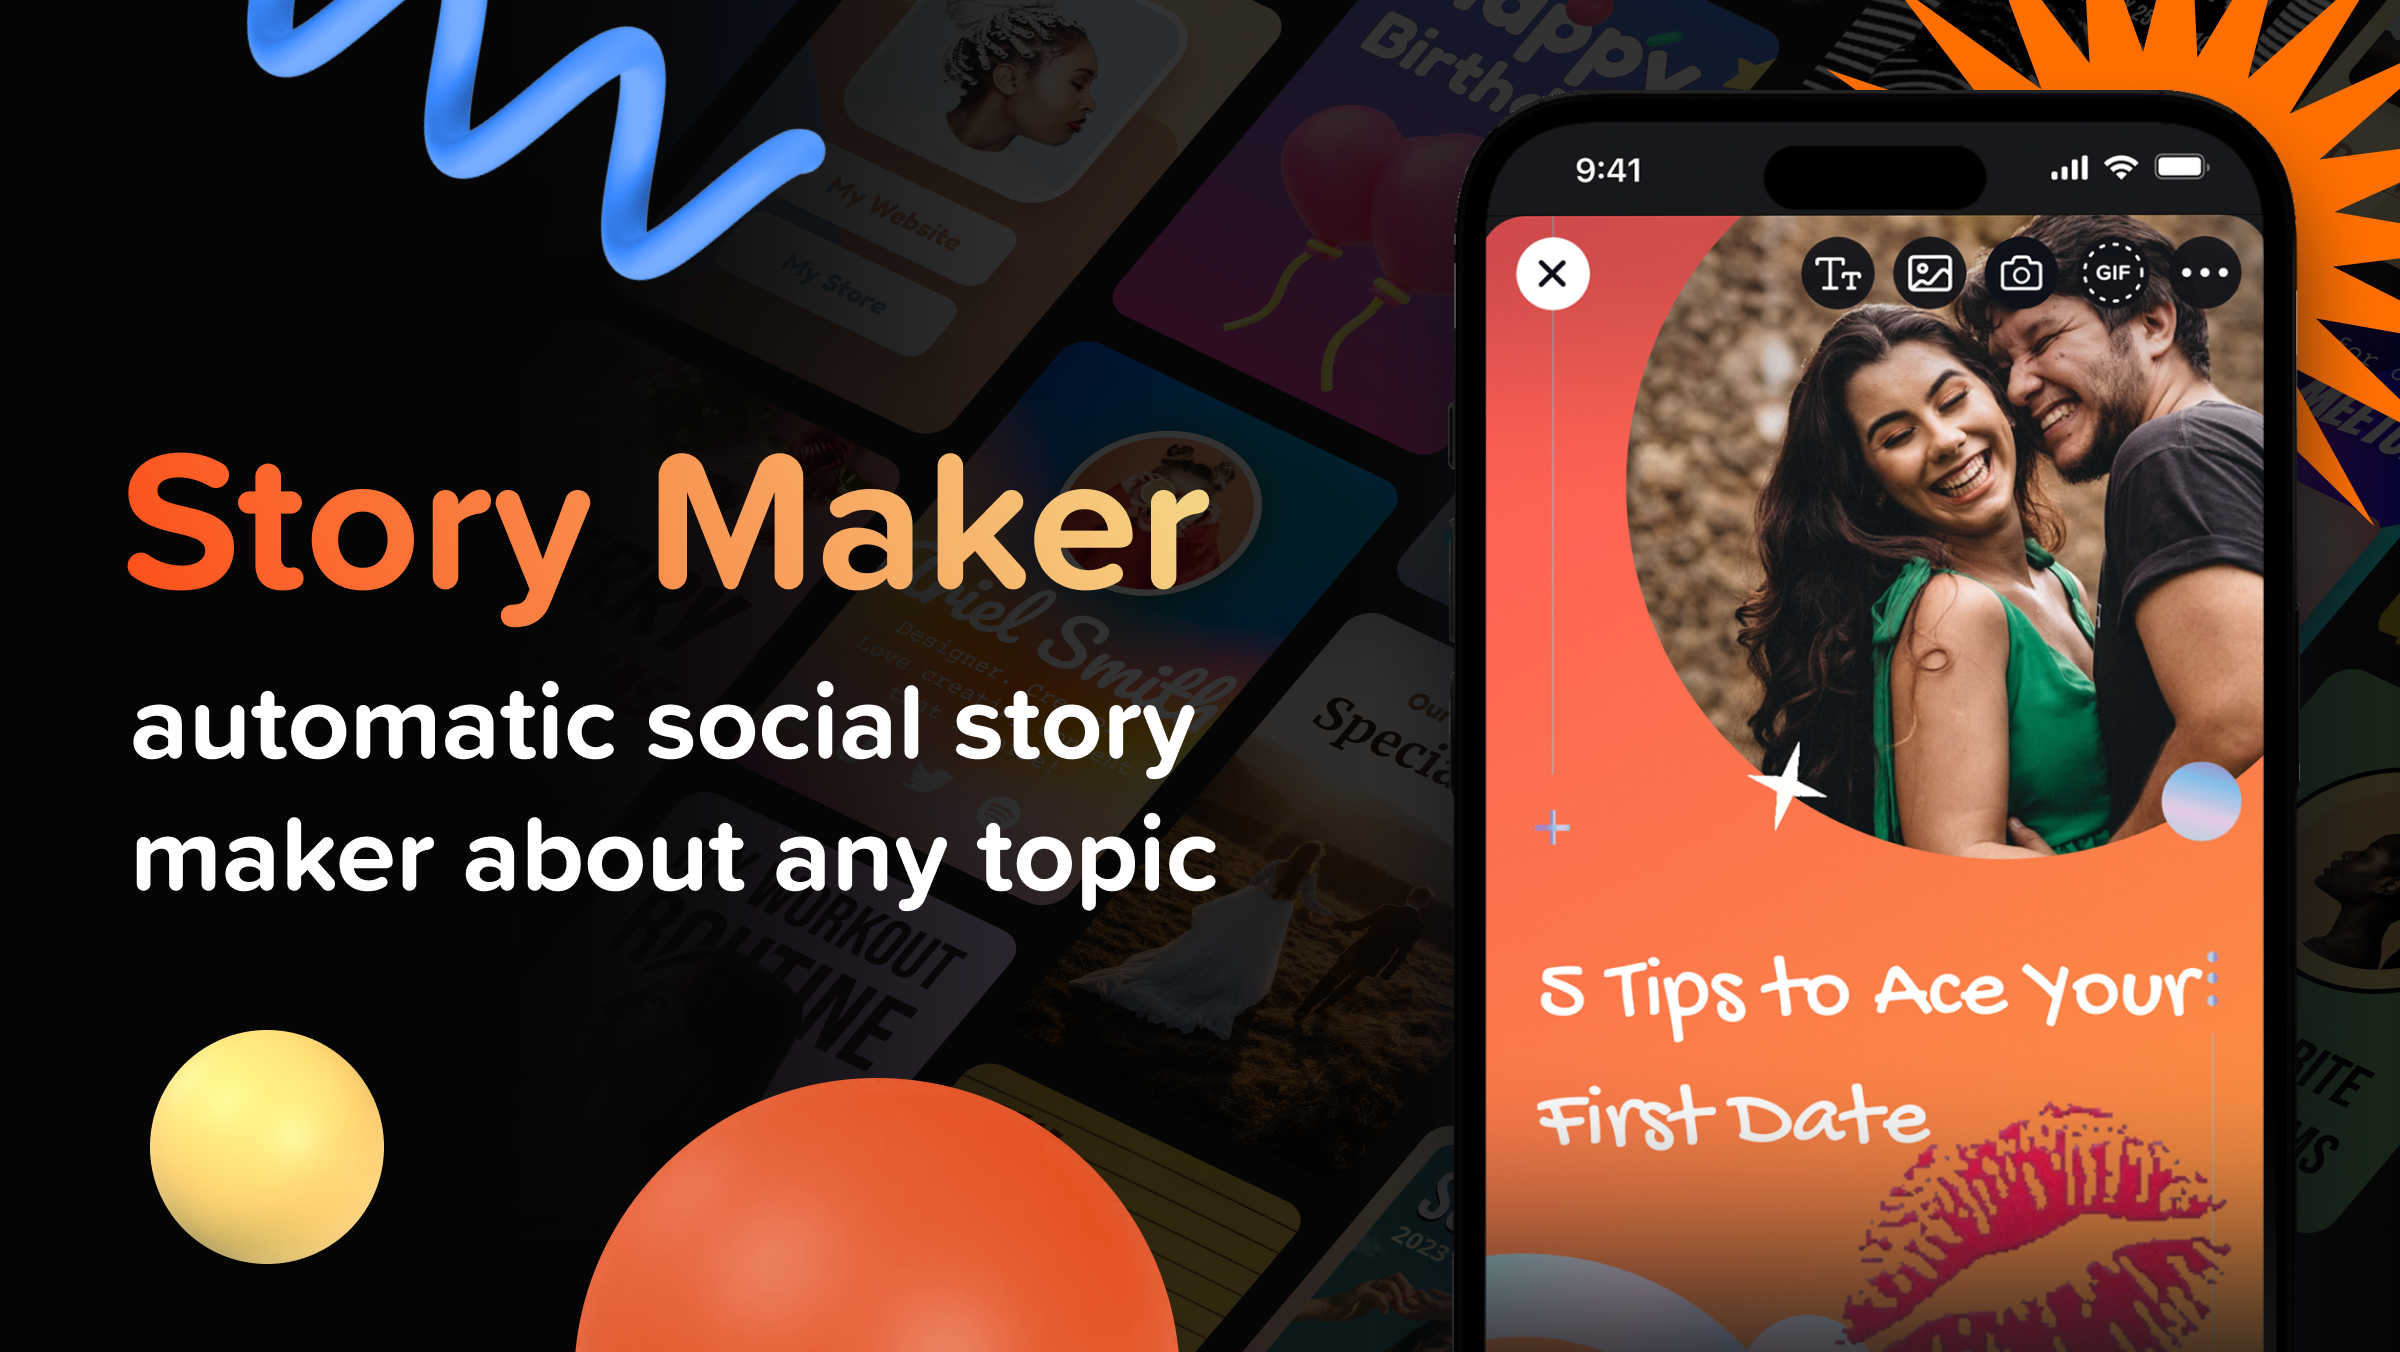 Piggy MagicPiggy Magic is a social story maker app with